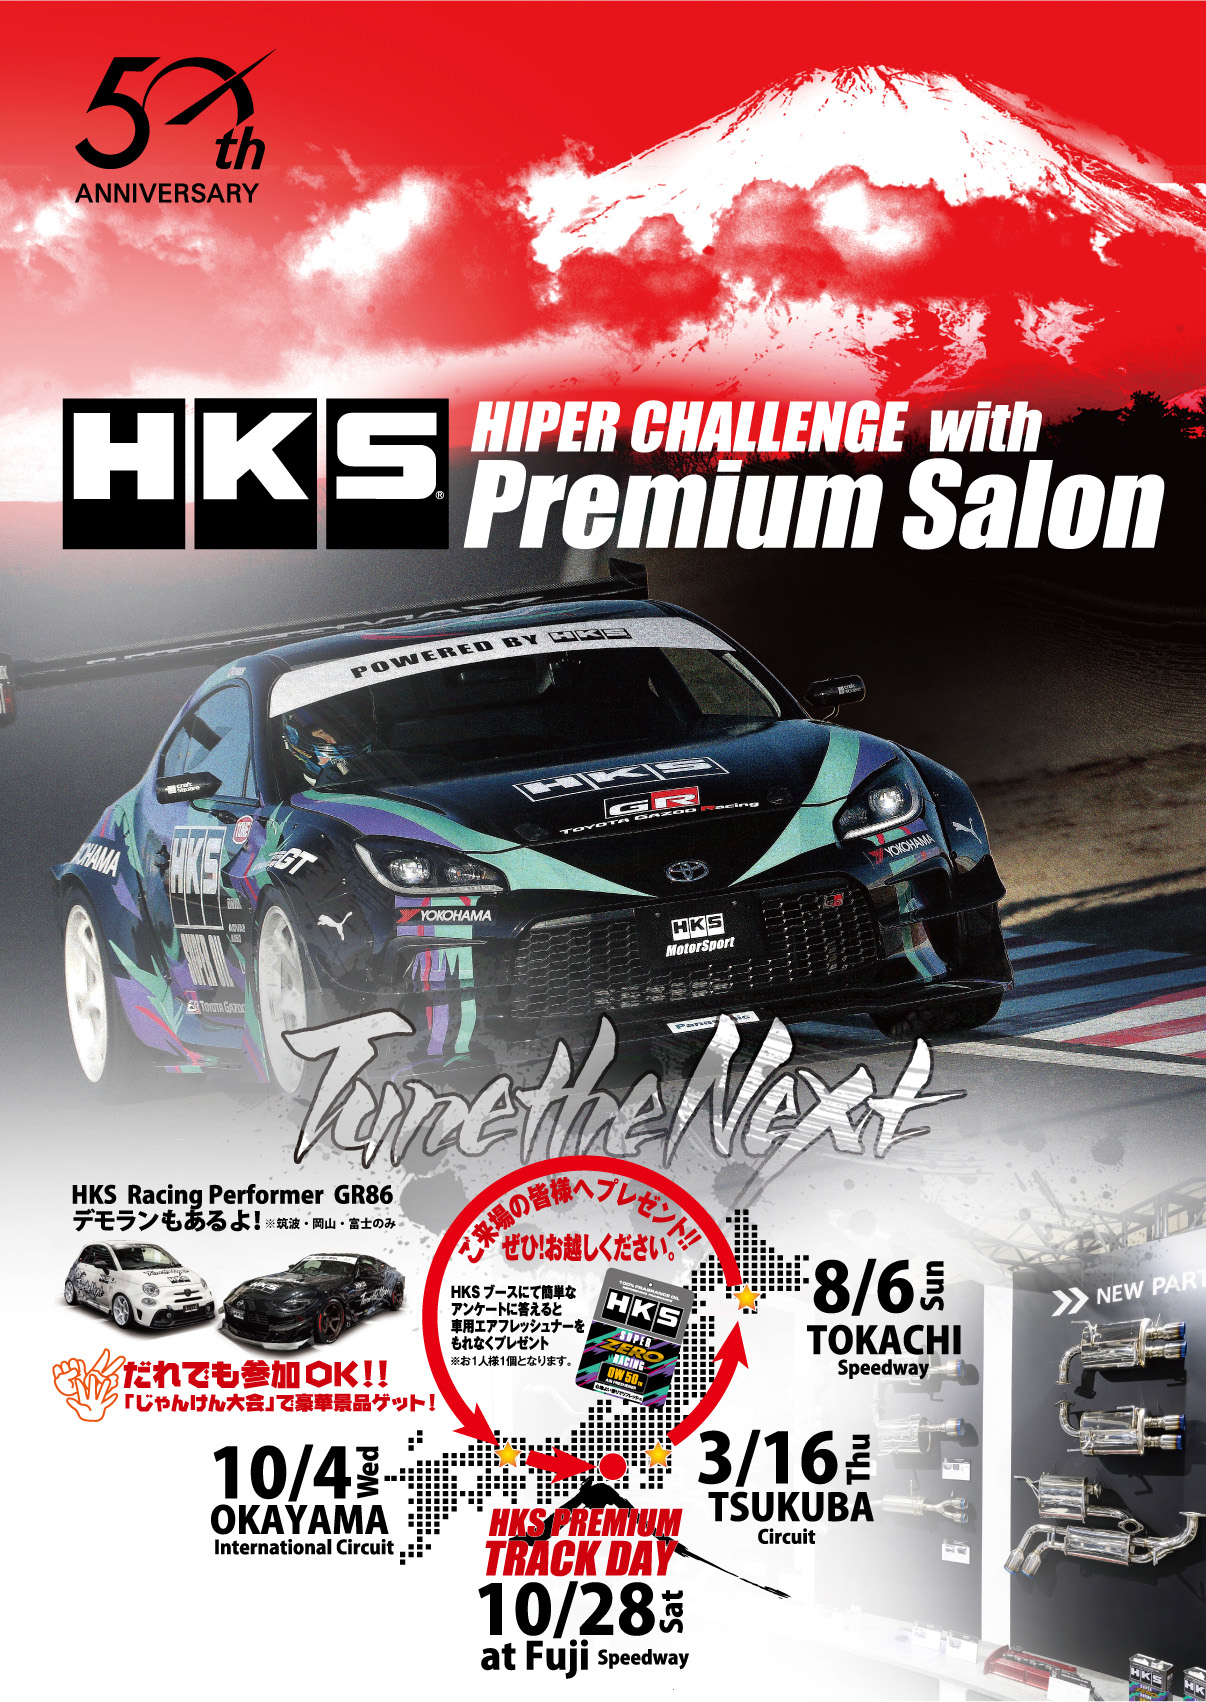 各地のサーキットでHKSのデモカーや最新パーツを出張展示『HKS HIPER CHALLENGE with Premium Salon』